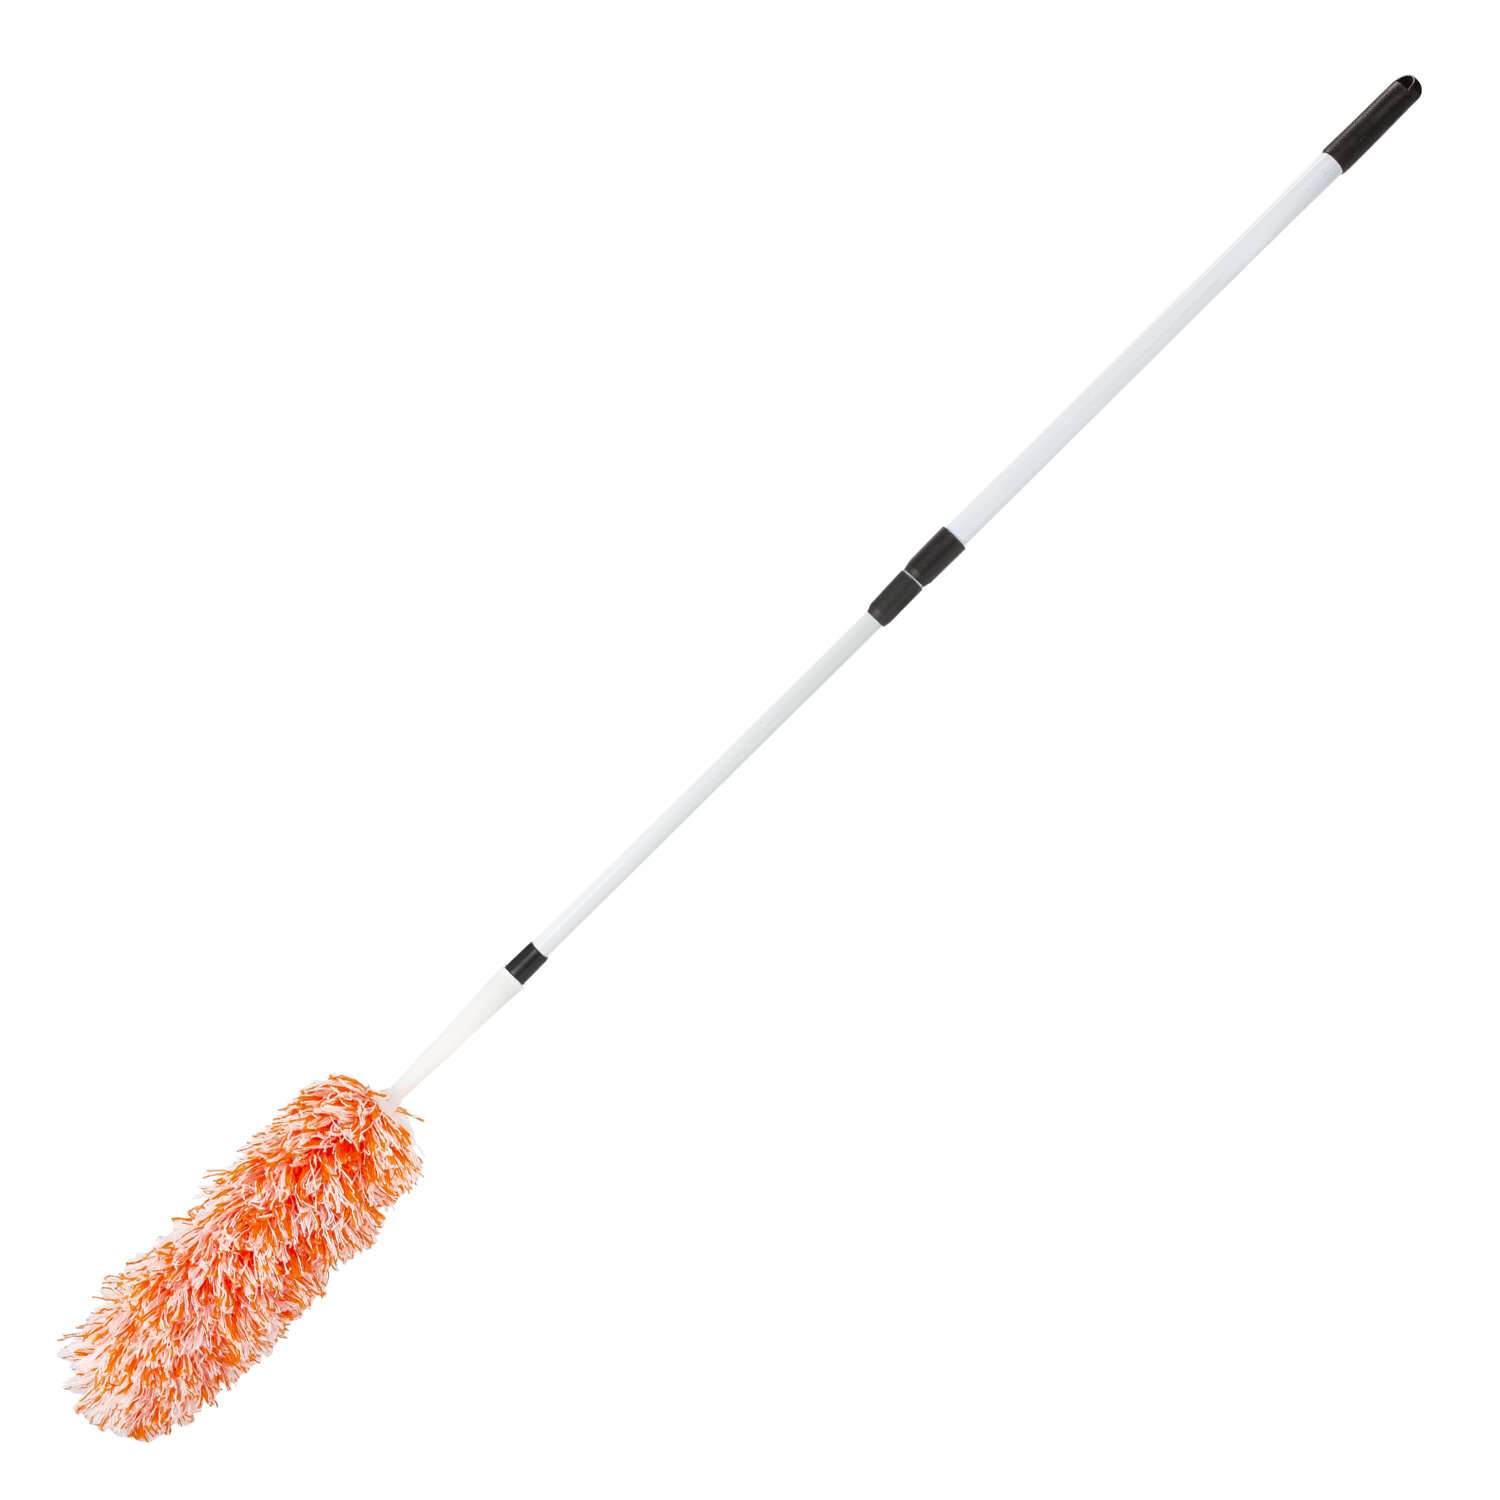 Пипидастр-щетка Лайма для уборки пыли метелка 30 см ручка телескопическая - фото 11